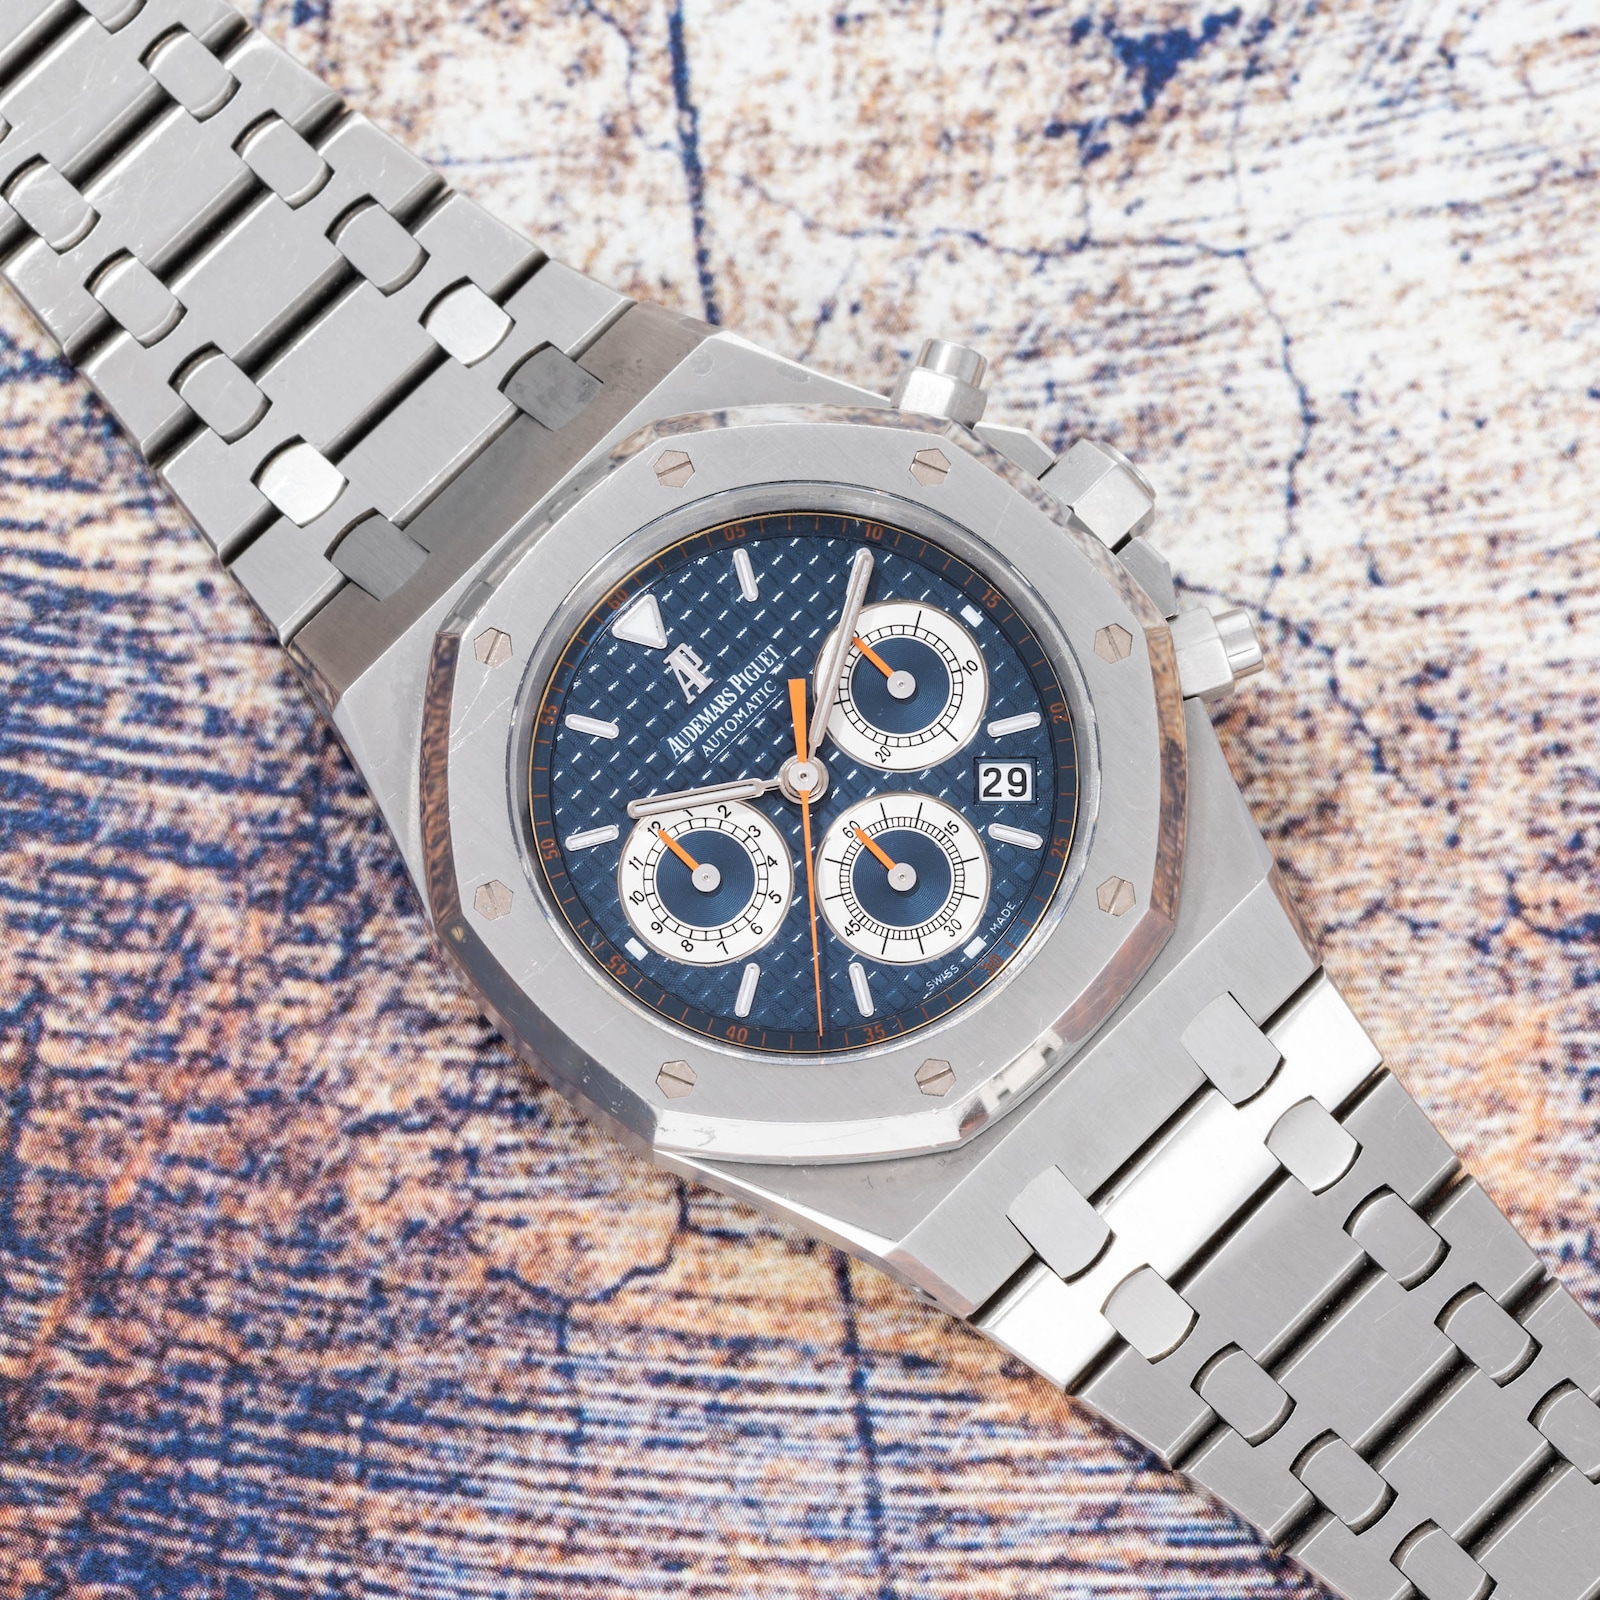 Royal Oak Certified Pre Owned Watch in Silver - Audemars Piguet